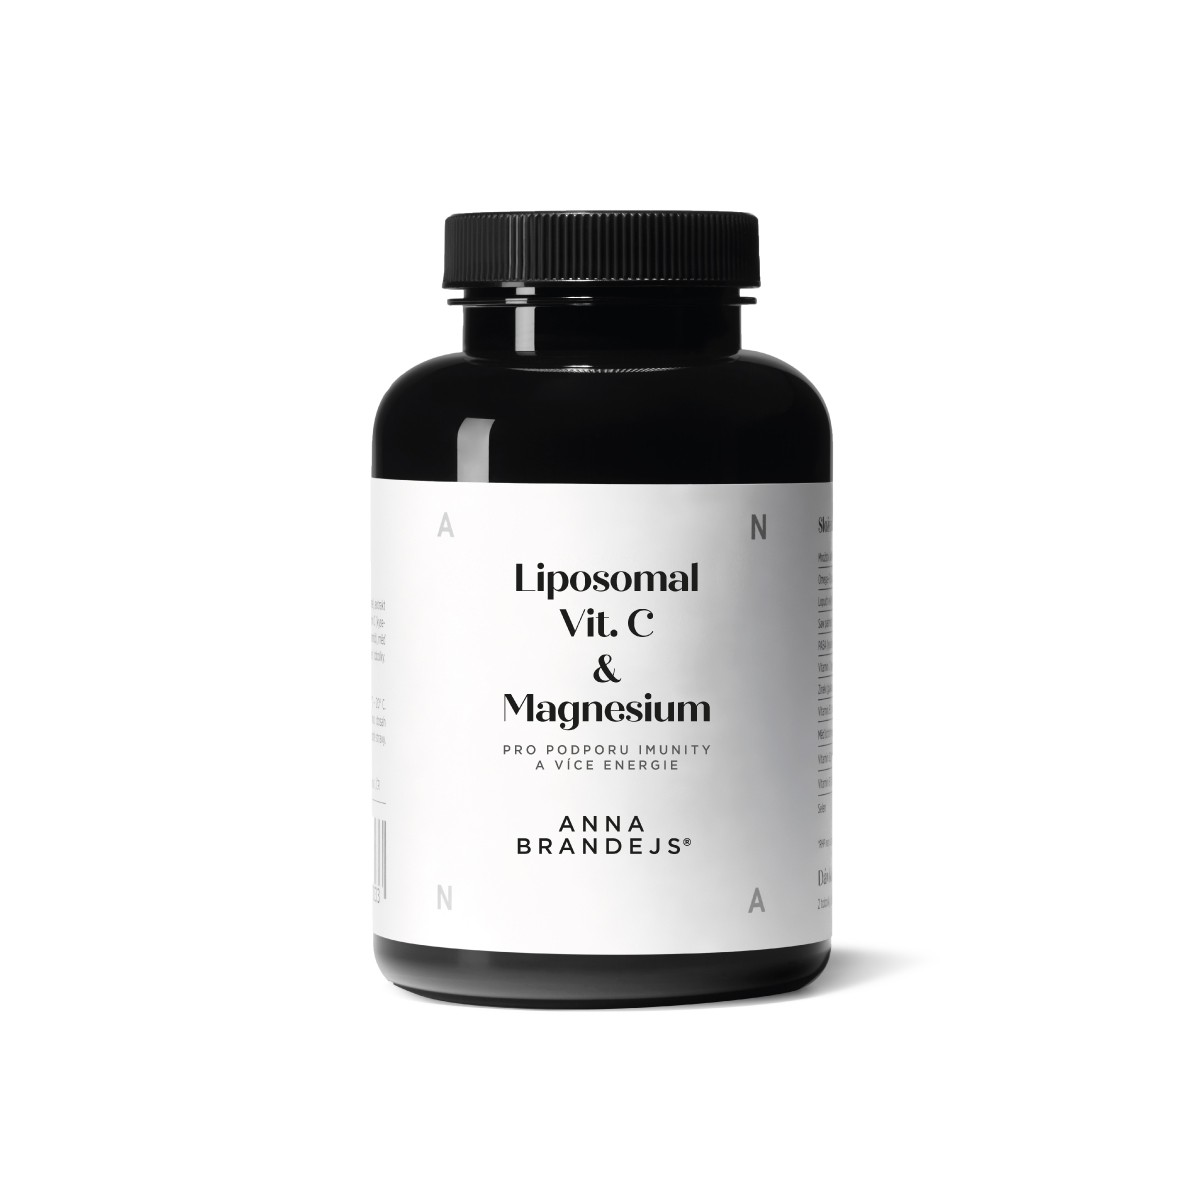 Liposomal Vit. C & Magnesium ANNA BRANDEJS